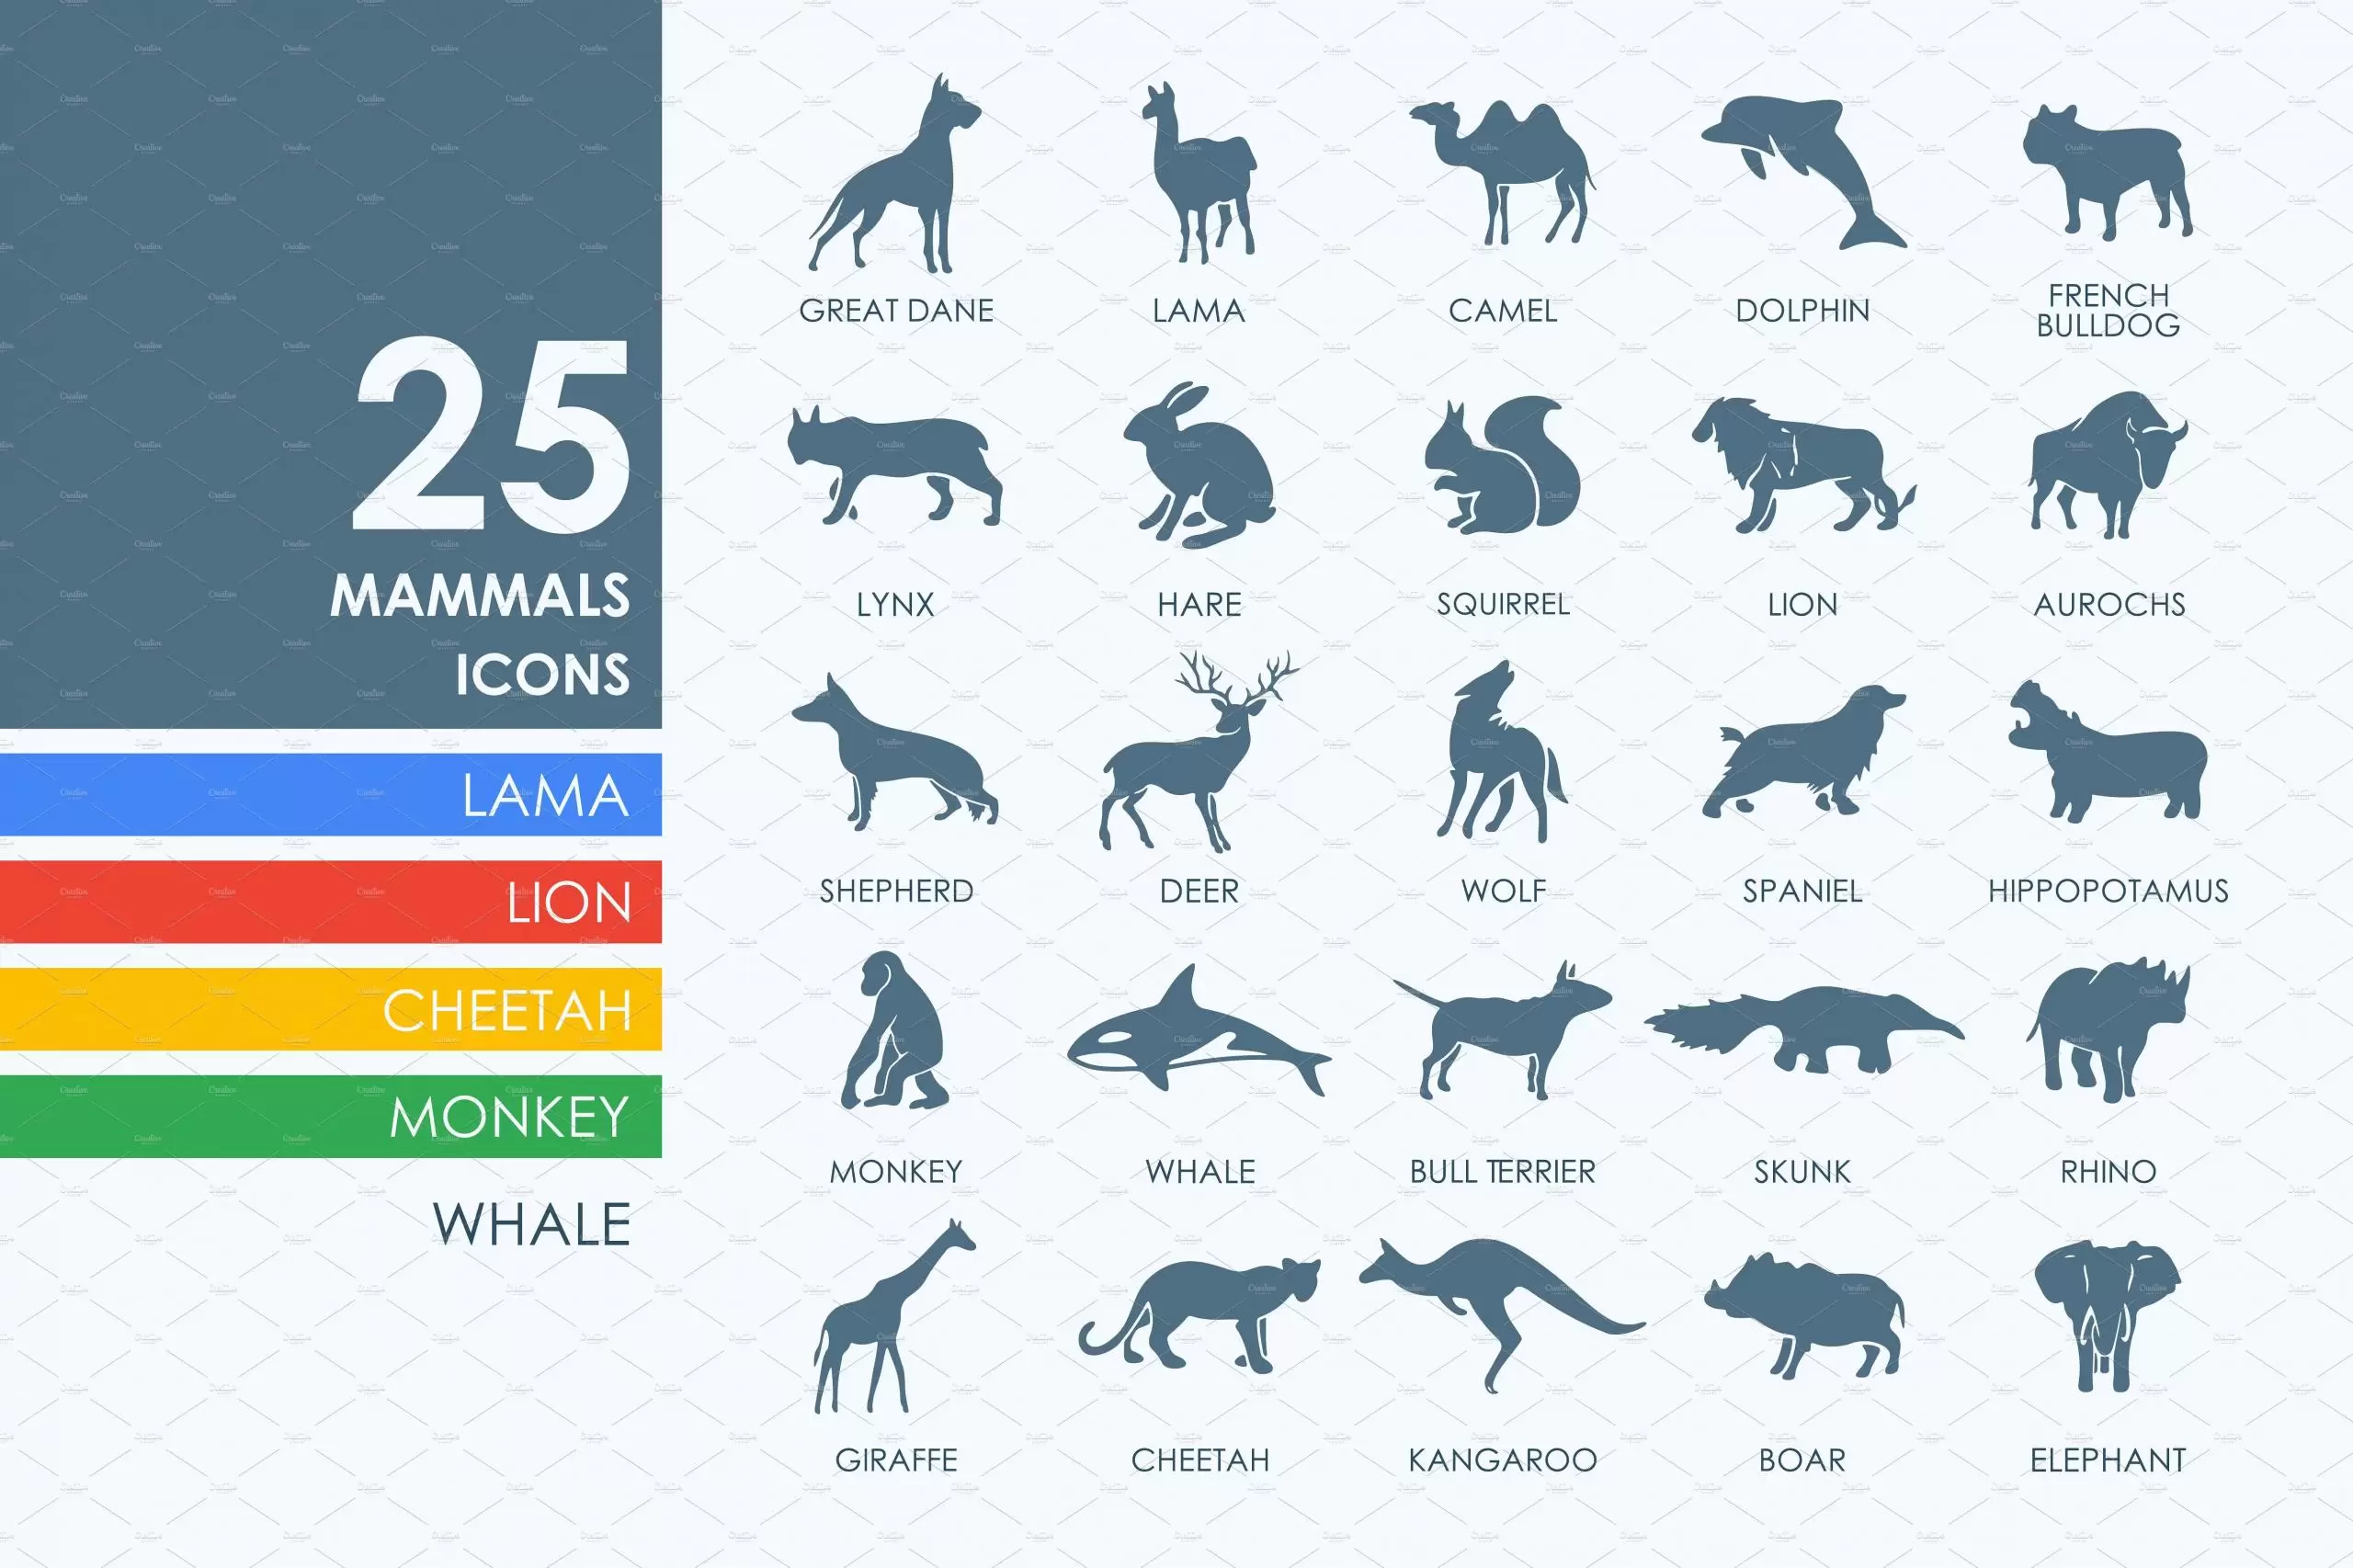 哺乳动物图标素材 25 mammals icons插图